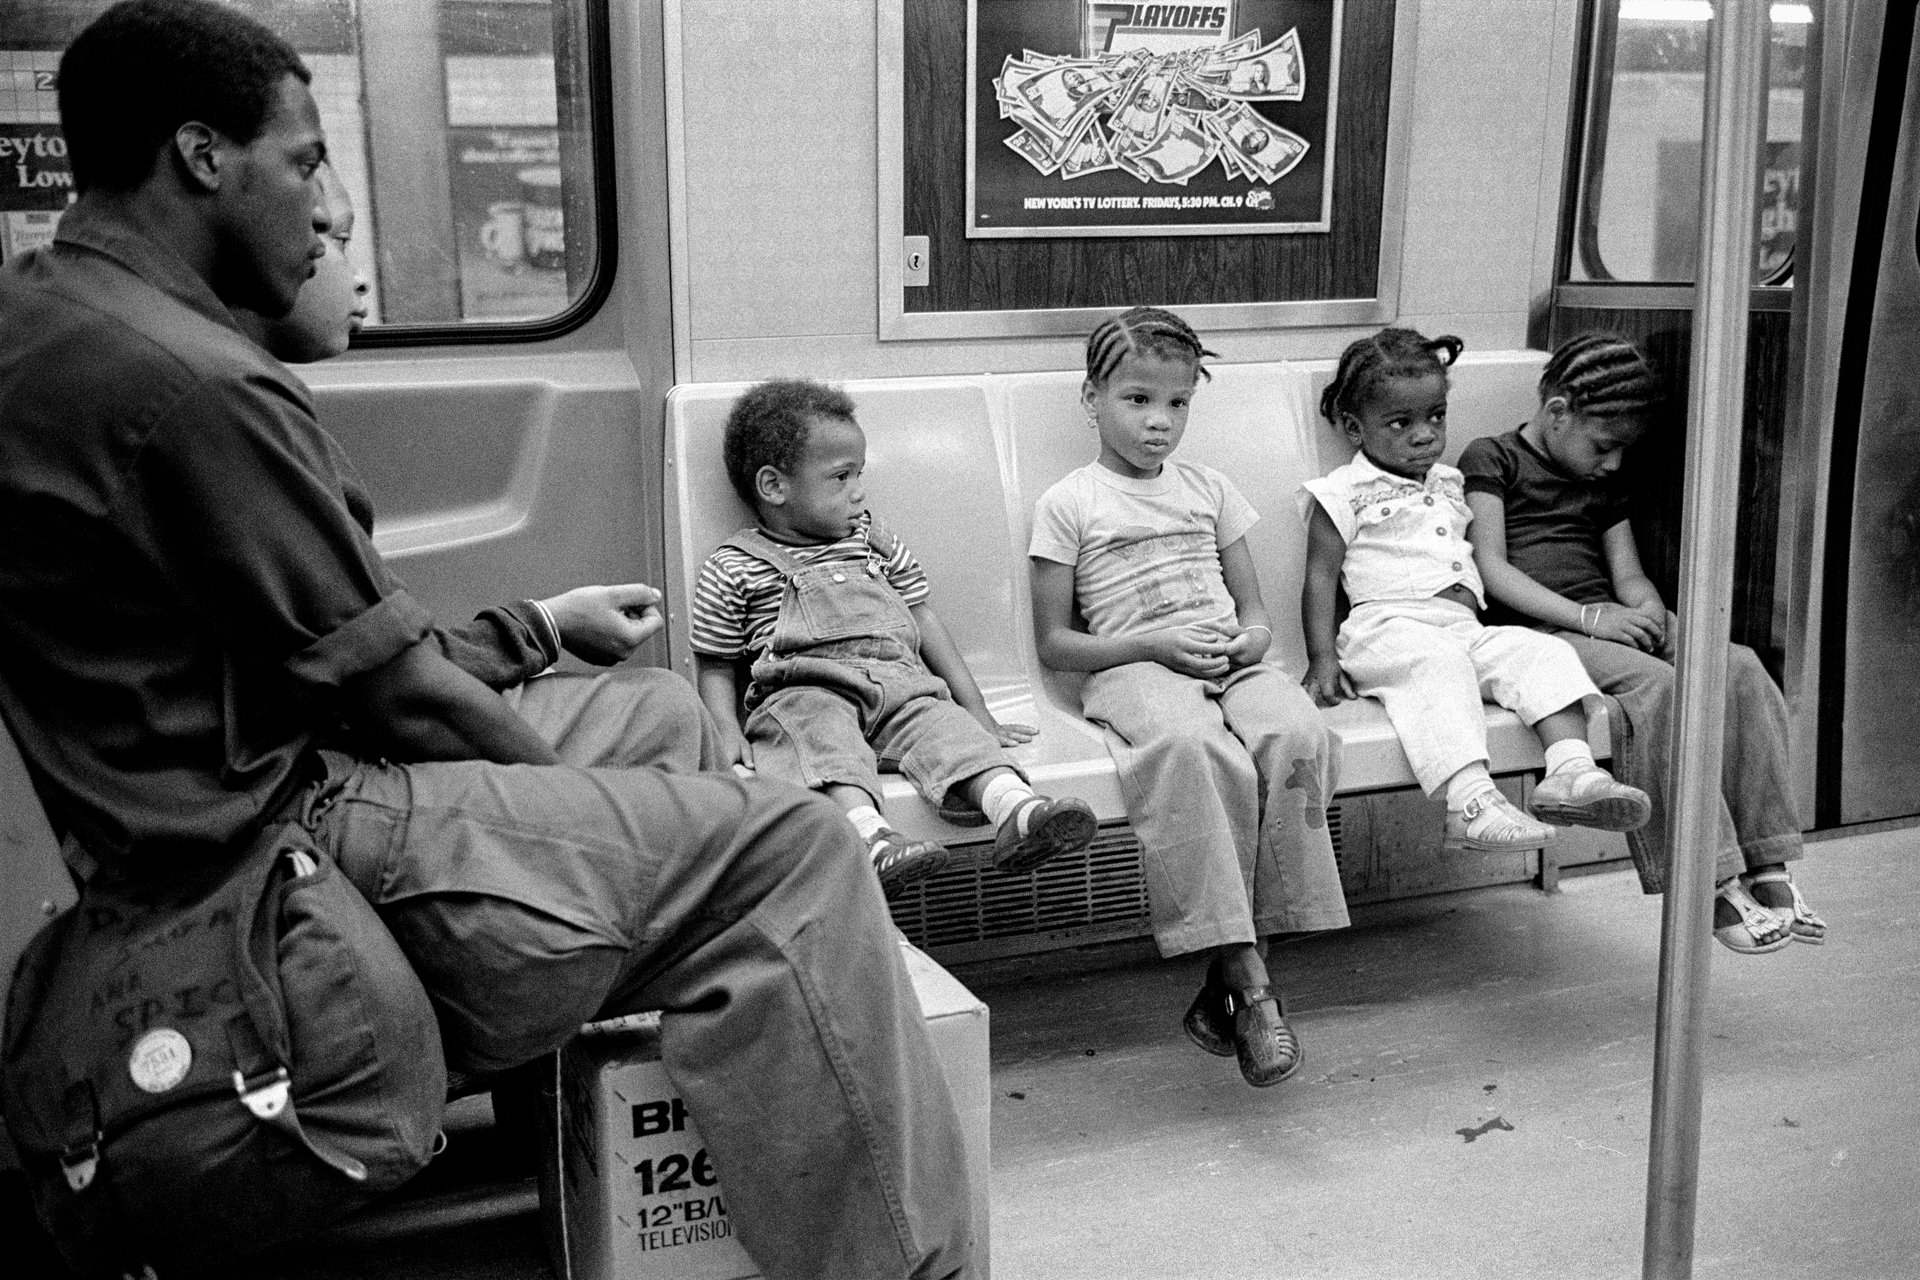 Subway, 2:00 a.m., NYC, 1978